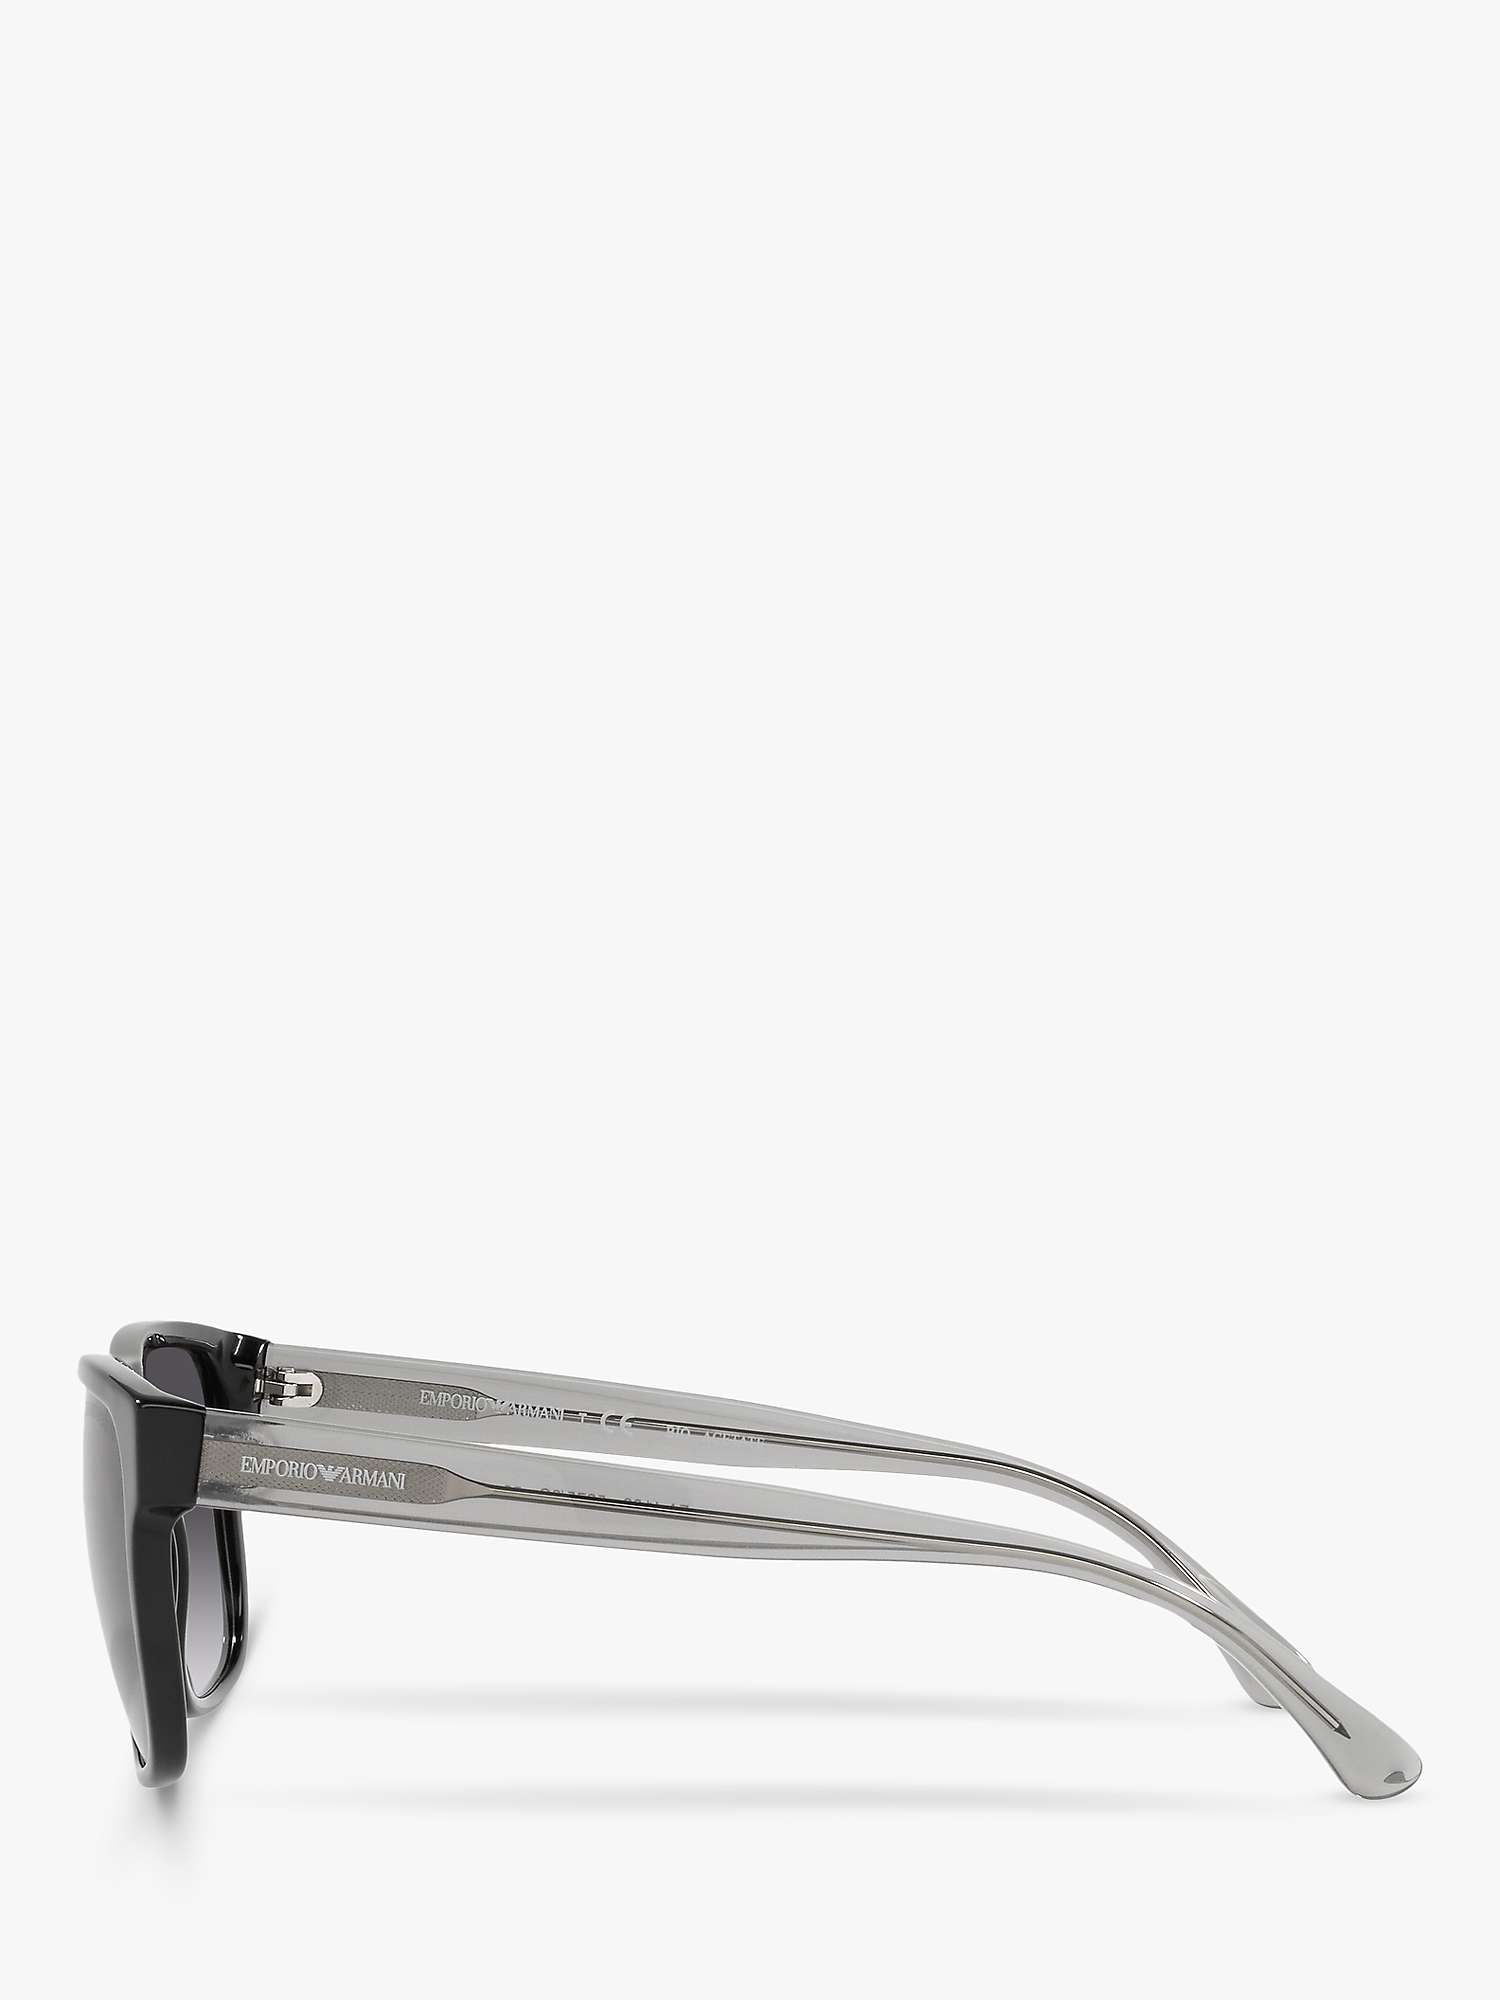 Buy Emporio Armani EA4163 Men's Square Sunglasses, Black/Grey Gradient Online at johnlewis.com